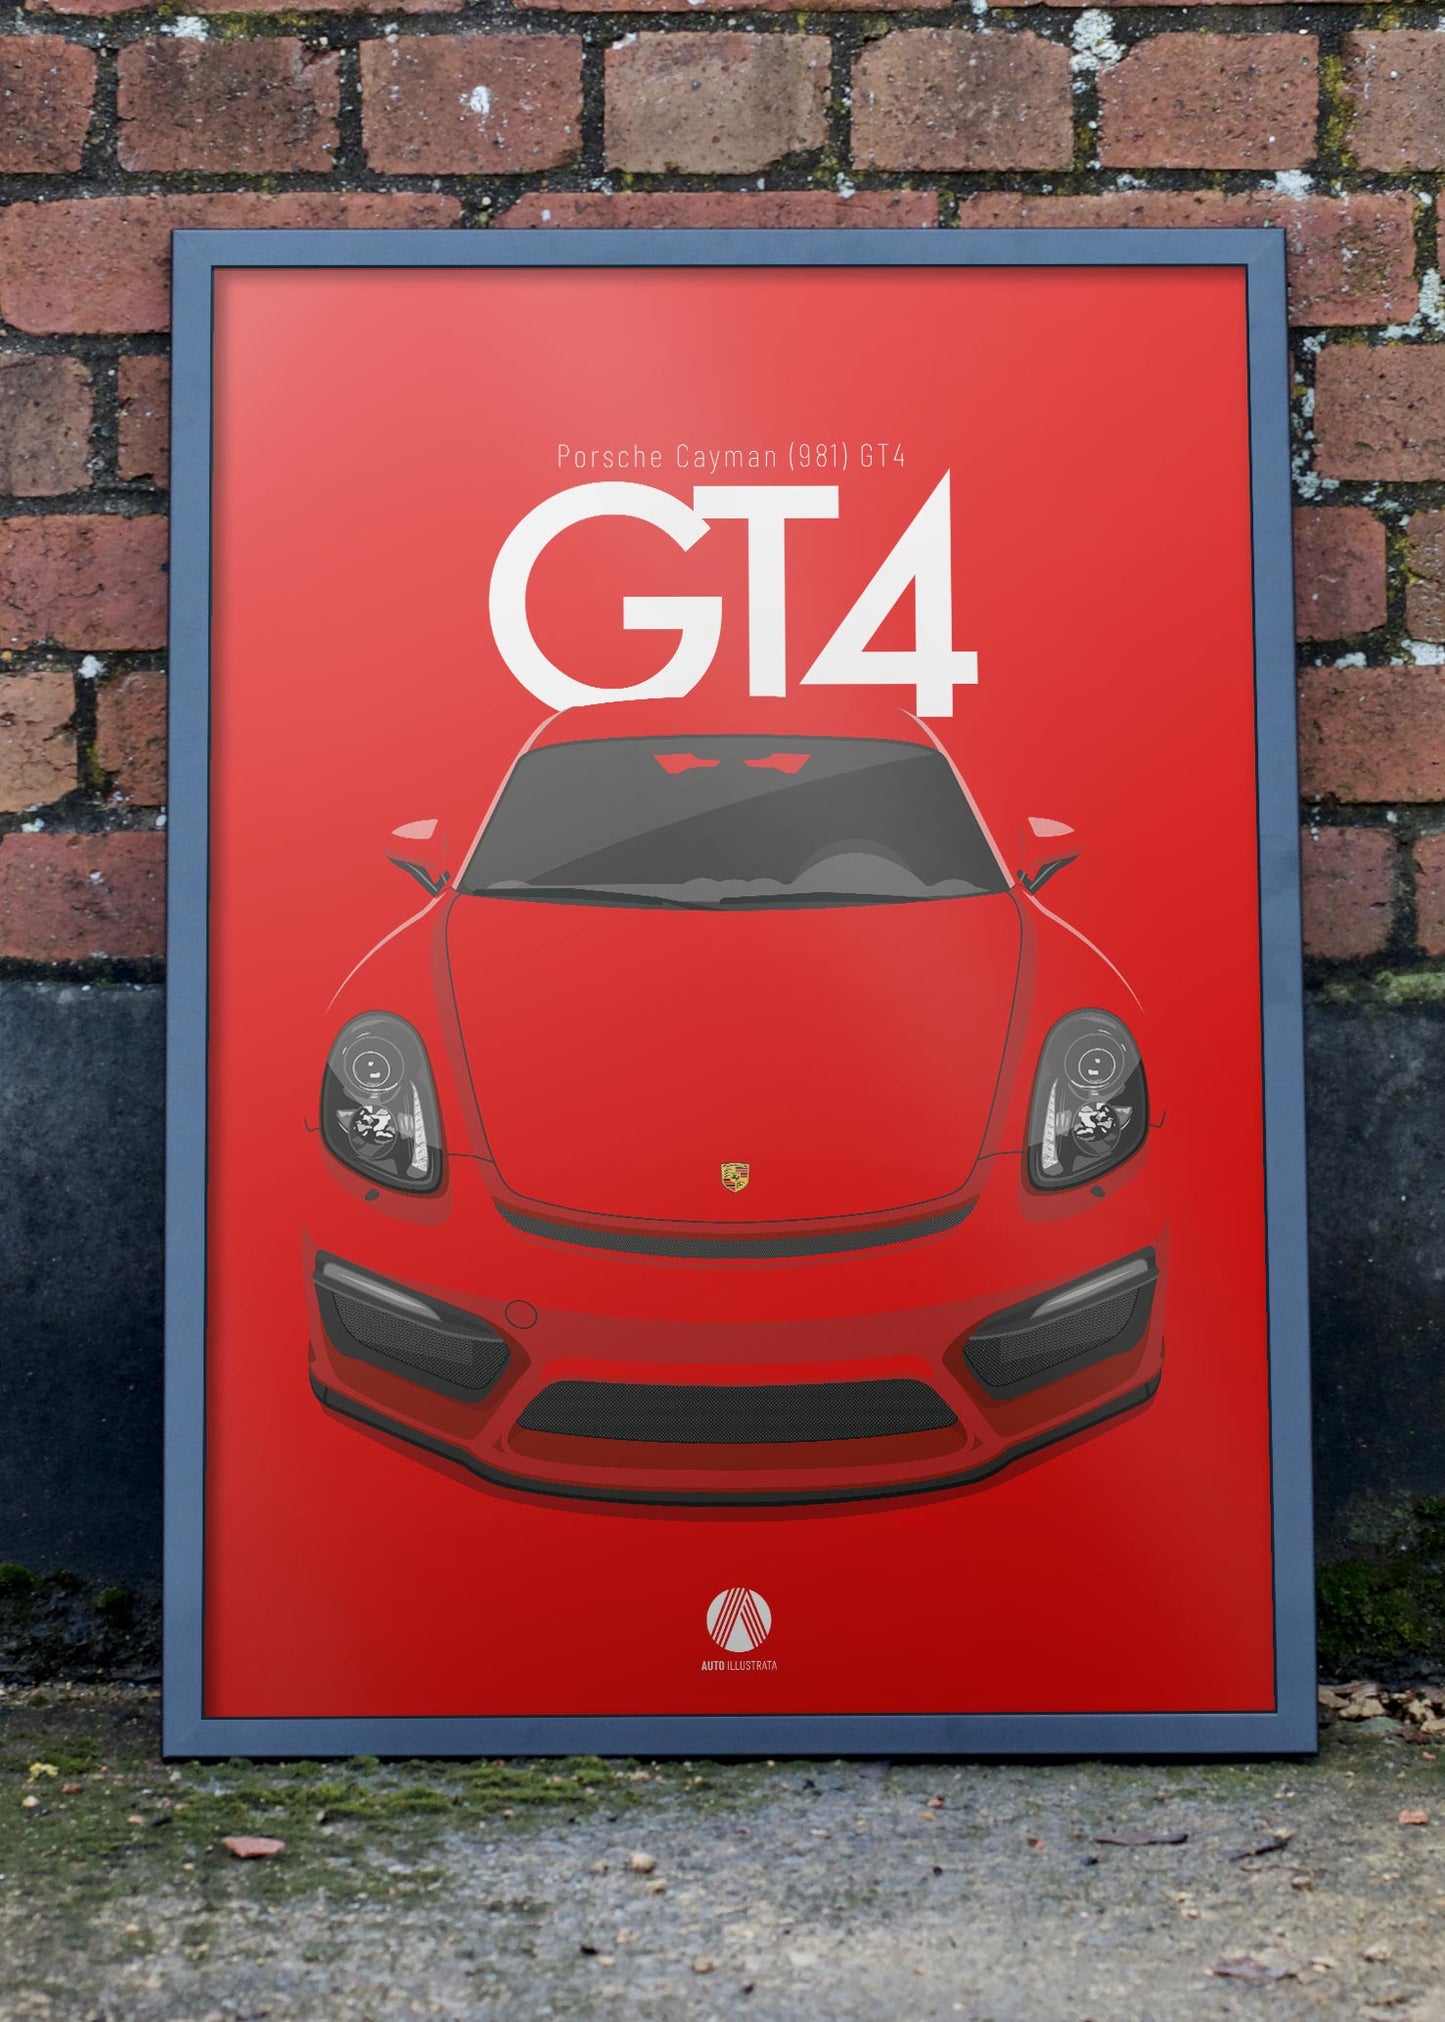 2015 Porsche Cayman (981) GT4 - Guards Red - poster print